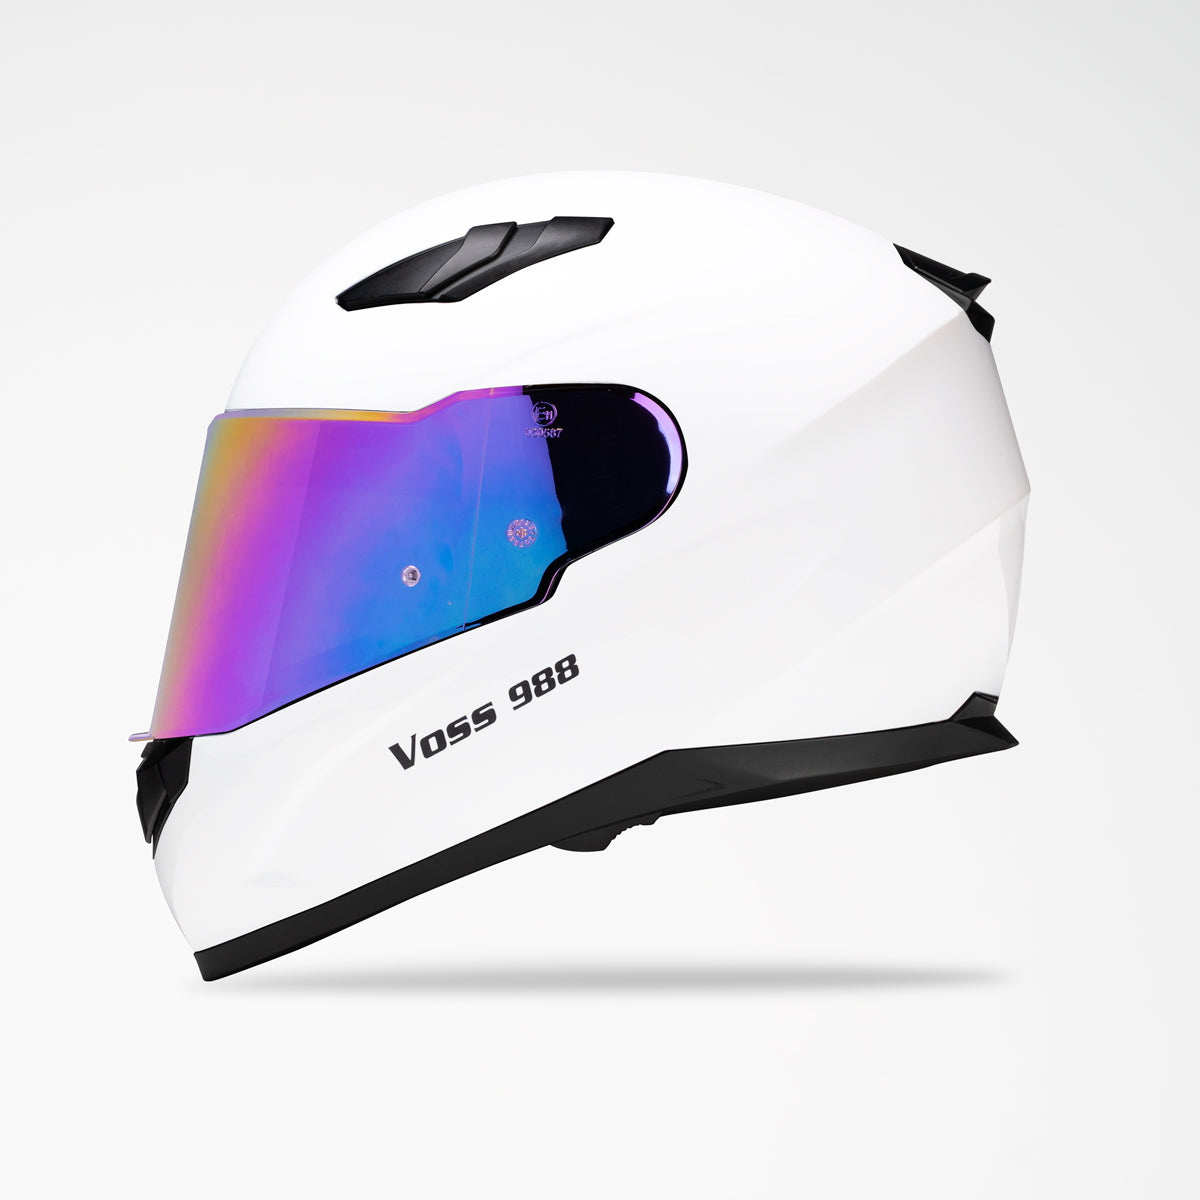 VOSS 988 MOTO-1 WHITE HELMET - Voss Helmets